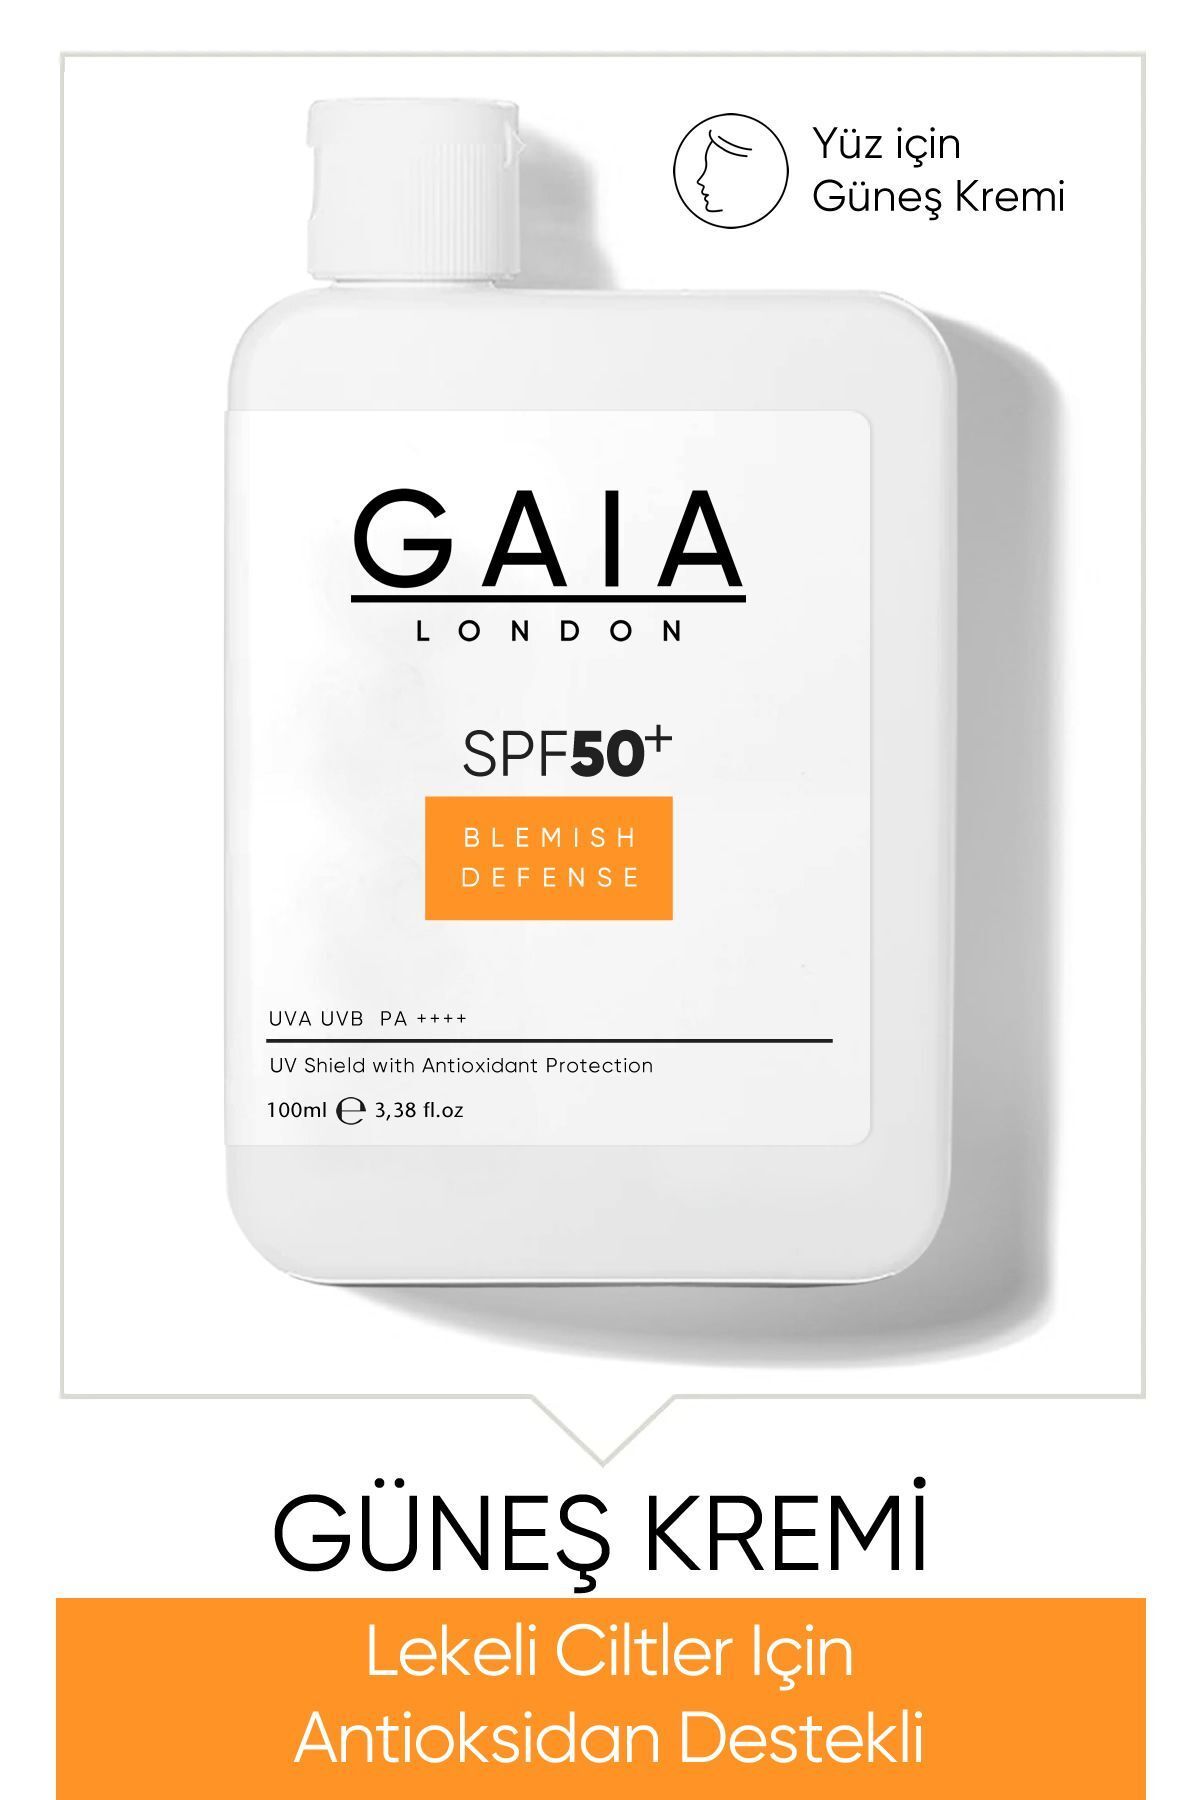 Gaia London Lekeli Ciltler Için Antioksidan Destekli 50spf Uva/uvb Blemısh Defense Güneş Kremi 120 ml